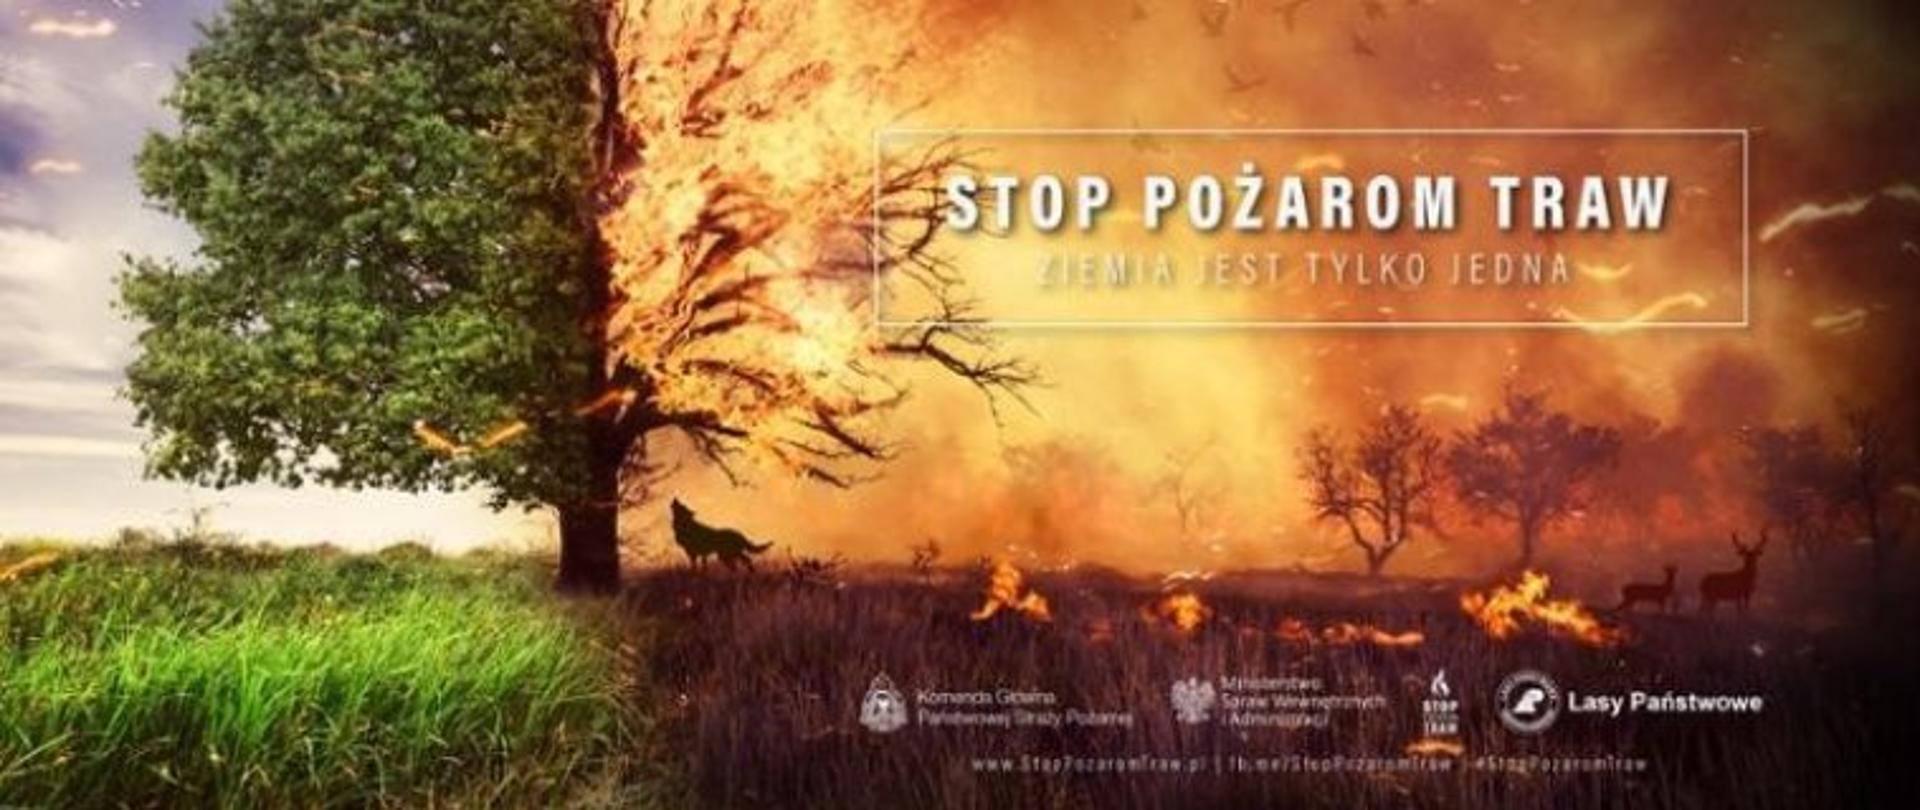 Kampania stop wypalaniu traw, widać płonący las zwierzęta oraz naturalne środowisko w zieleni 